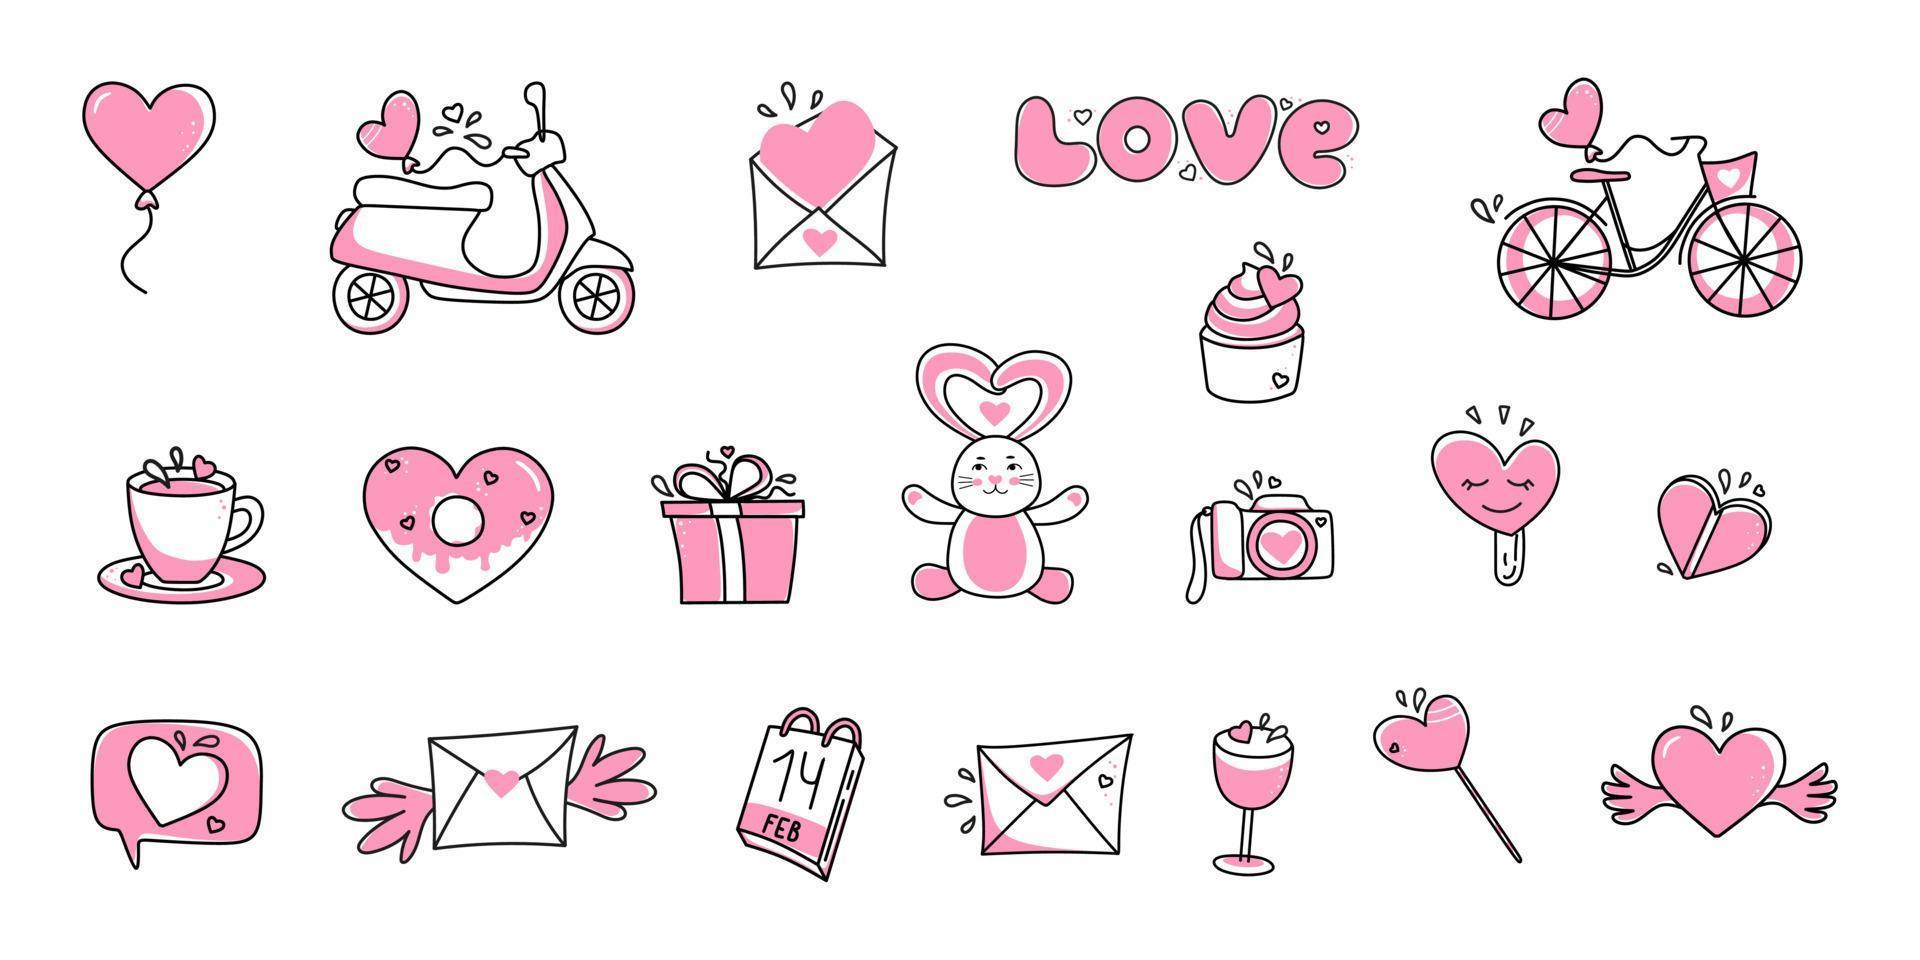 ensemble vectoriel d'icônes pour la saint valentin. symboles d'amour dessinés à la main dans un style linéaire. isolé sur fond blanc.